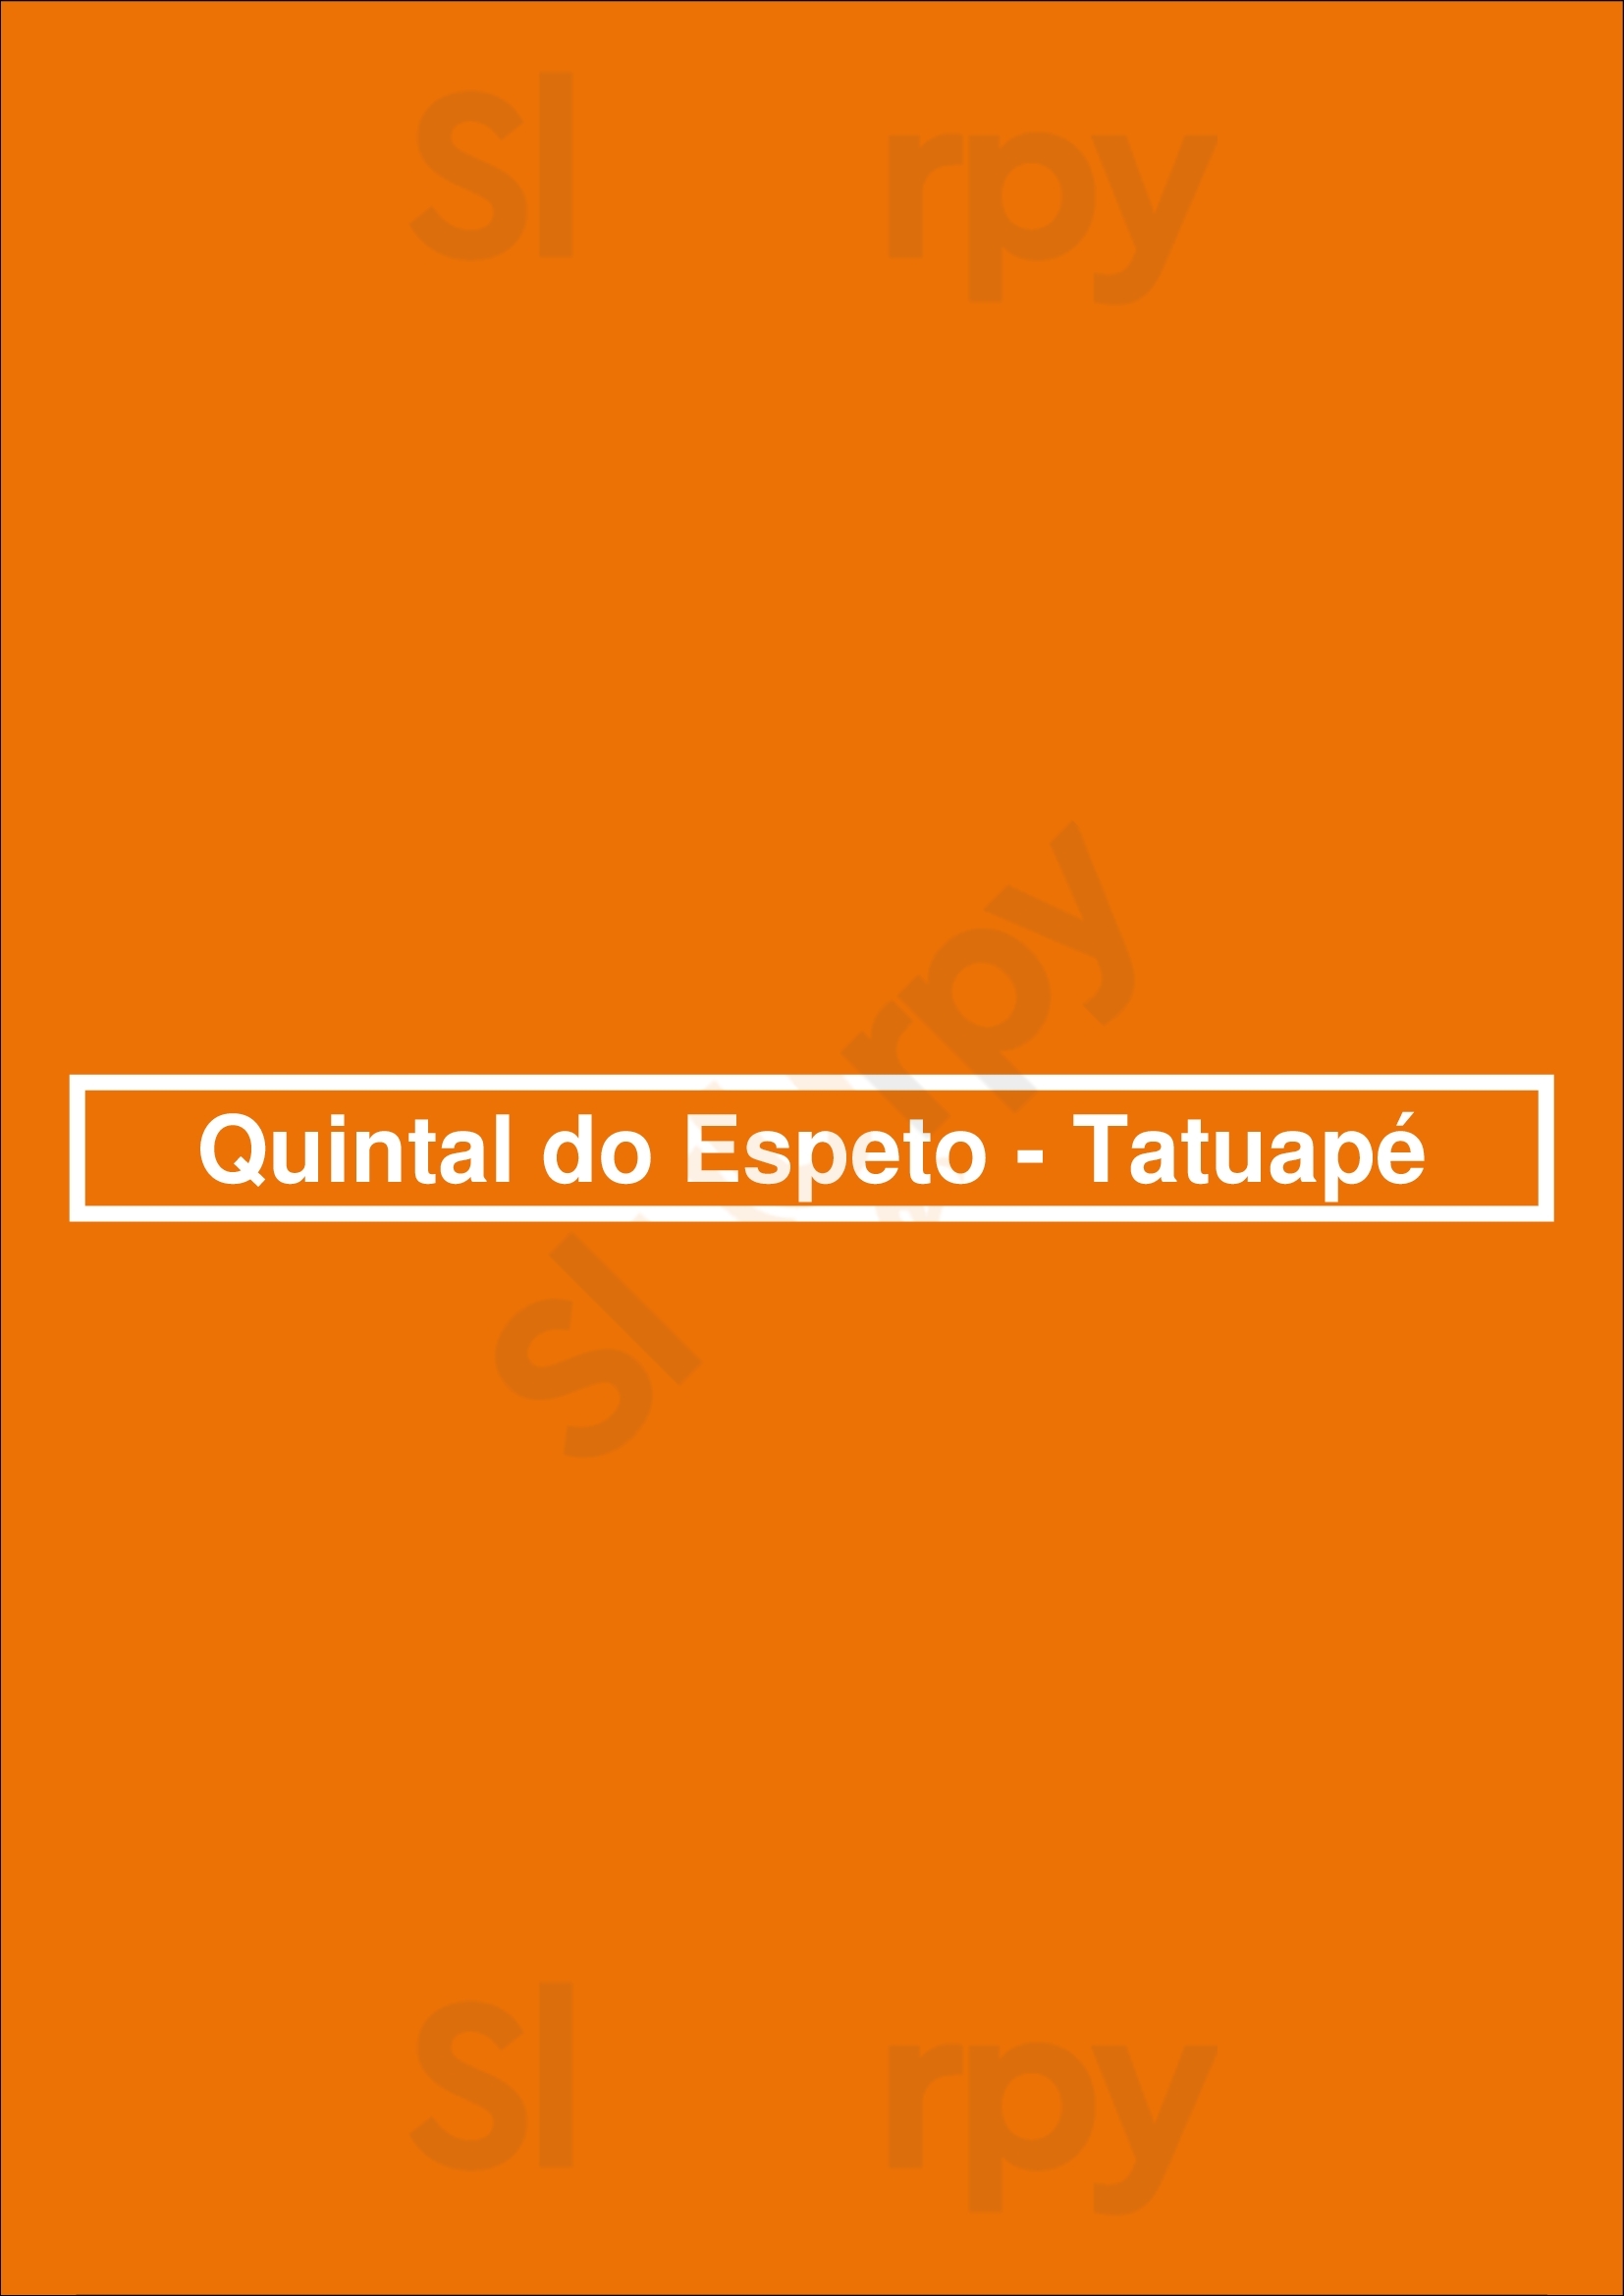 Quintal Do Espeto - Tatuapé São Paulo Menu - 1